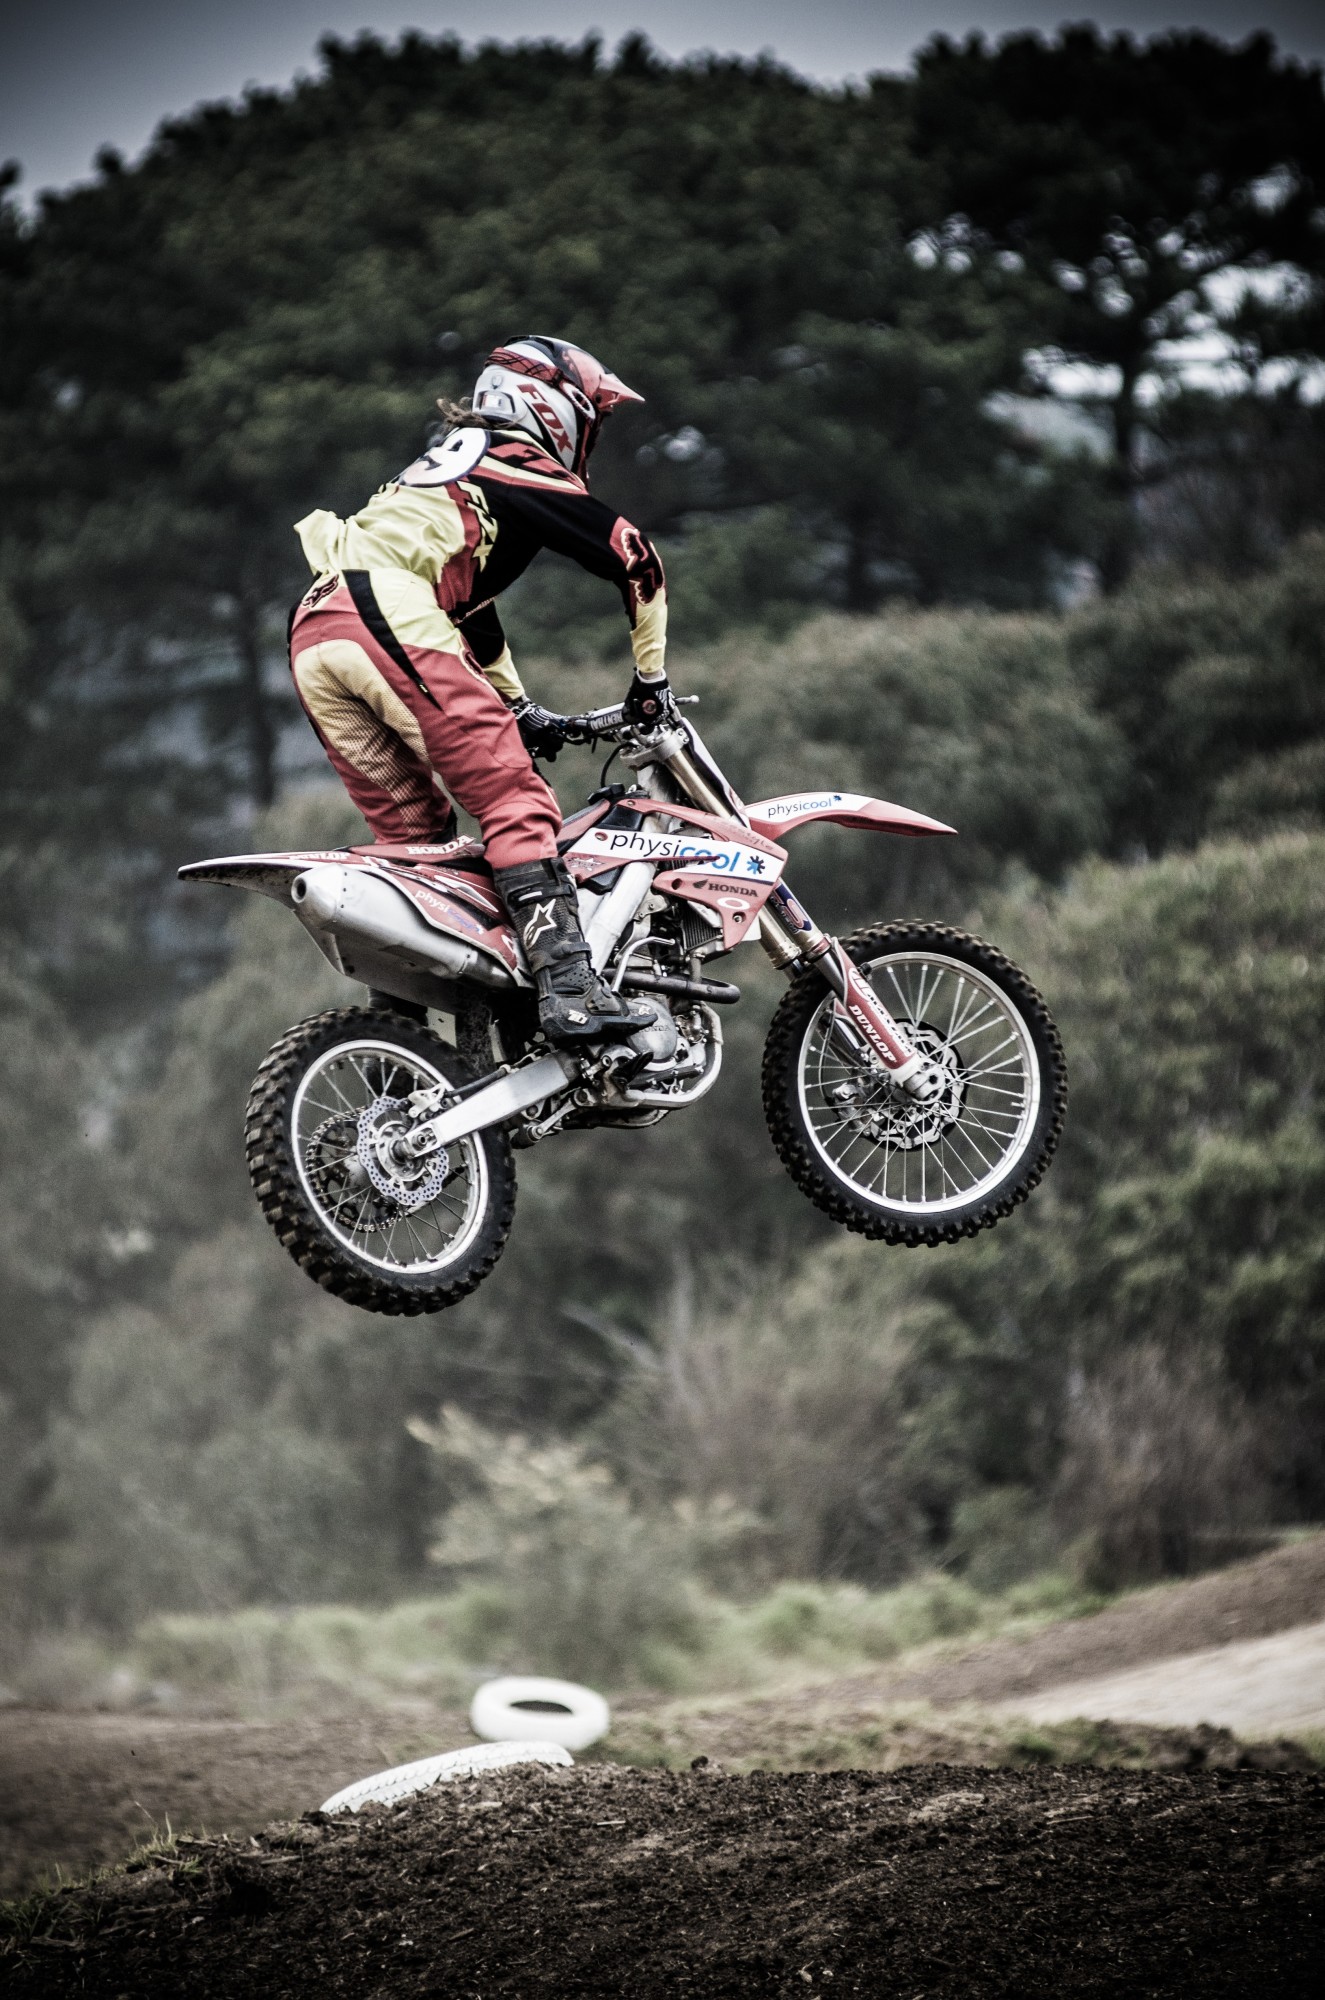 Motocross Rider